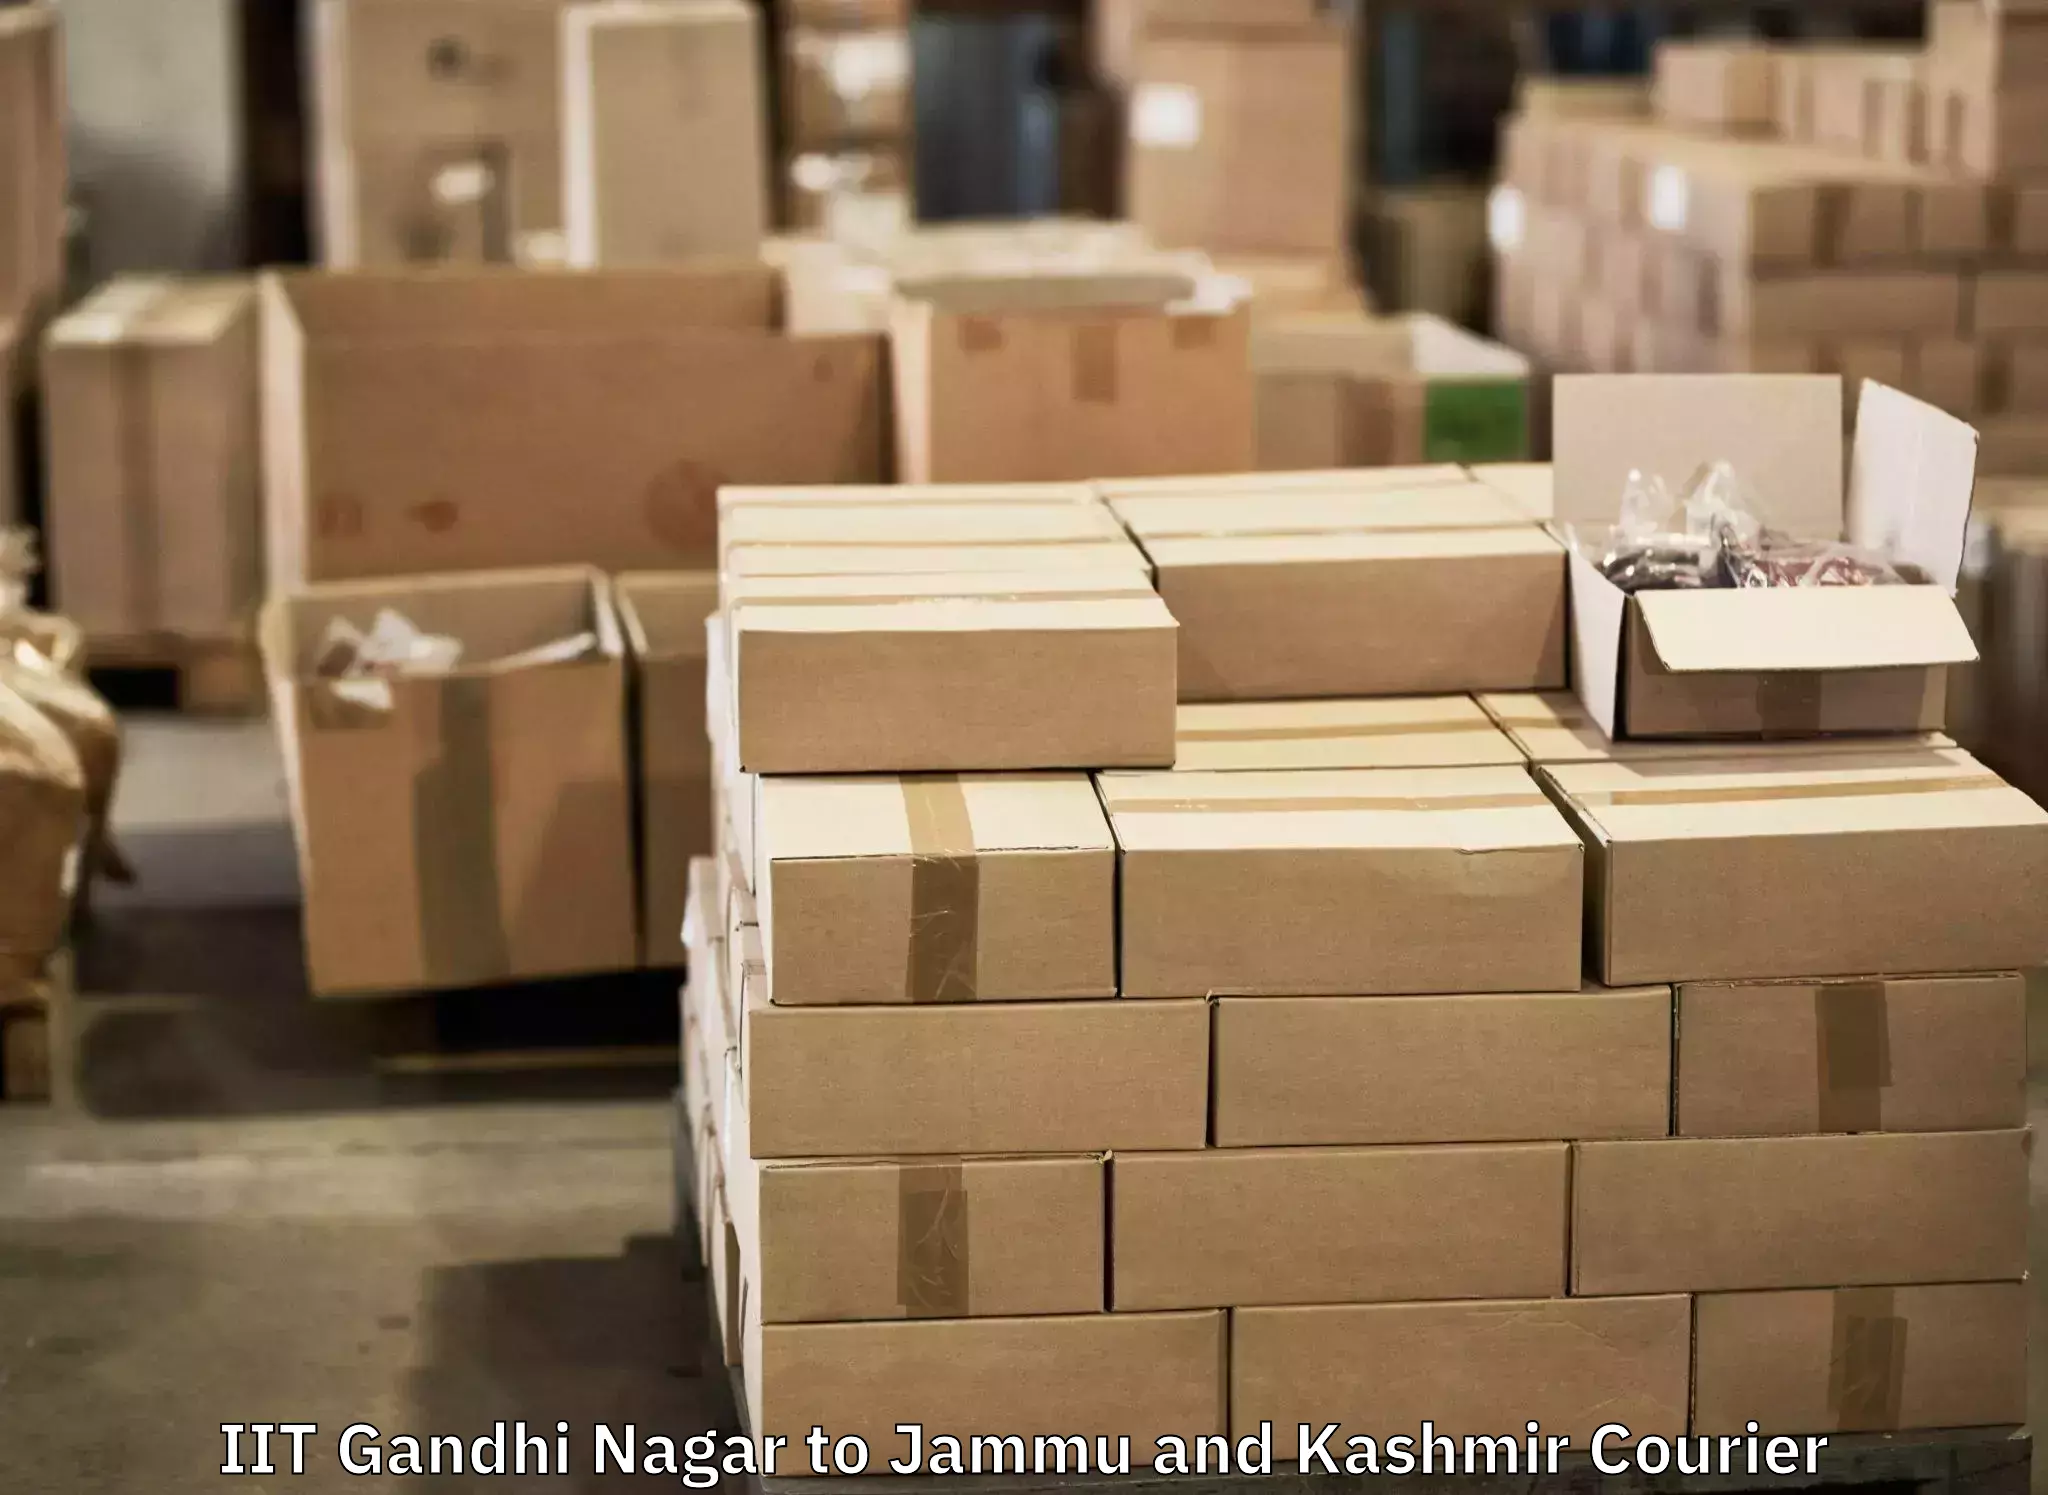 Luggage shipment specialists IIT Gandhi Nagar to IIT Jammu